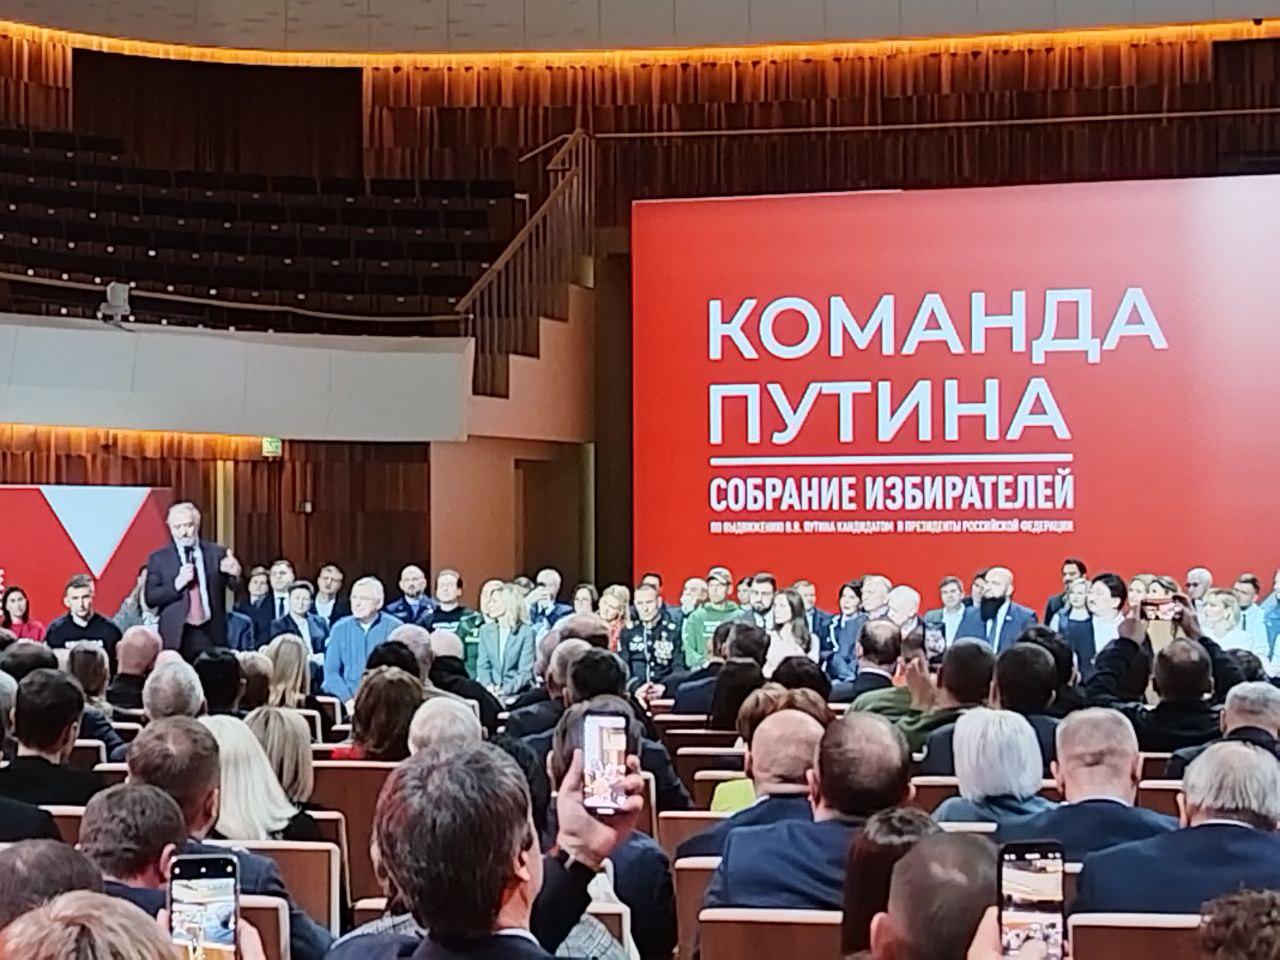 Группа избирателей проголосовала за самовыдвижение Путина